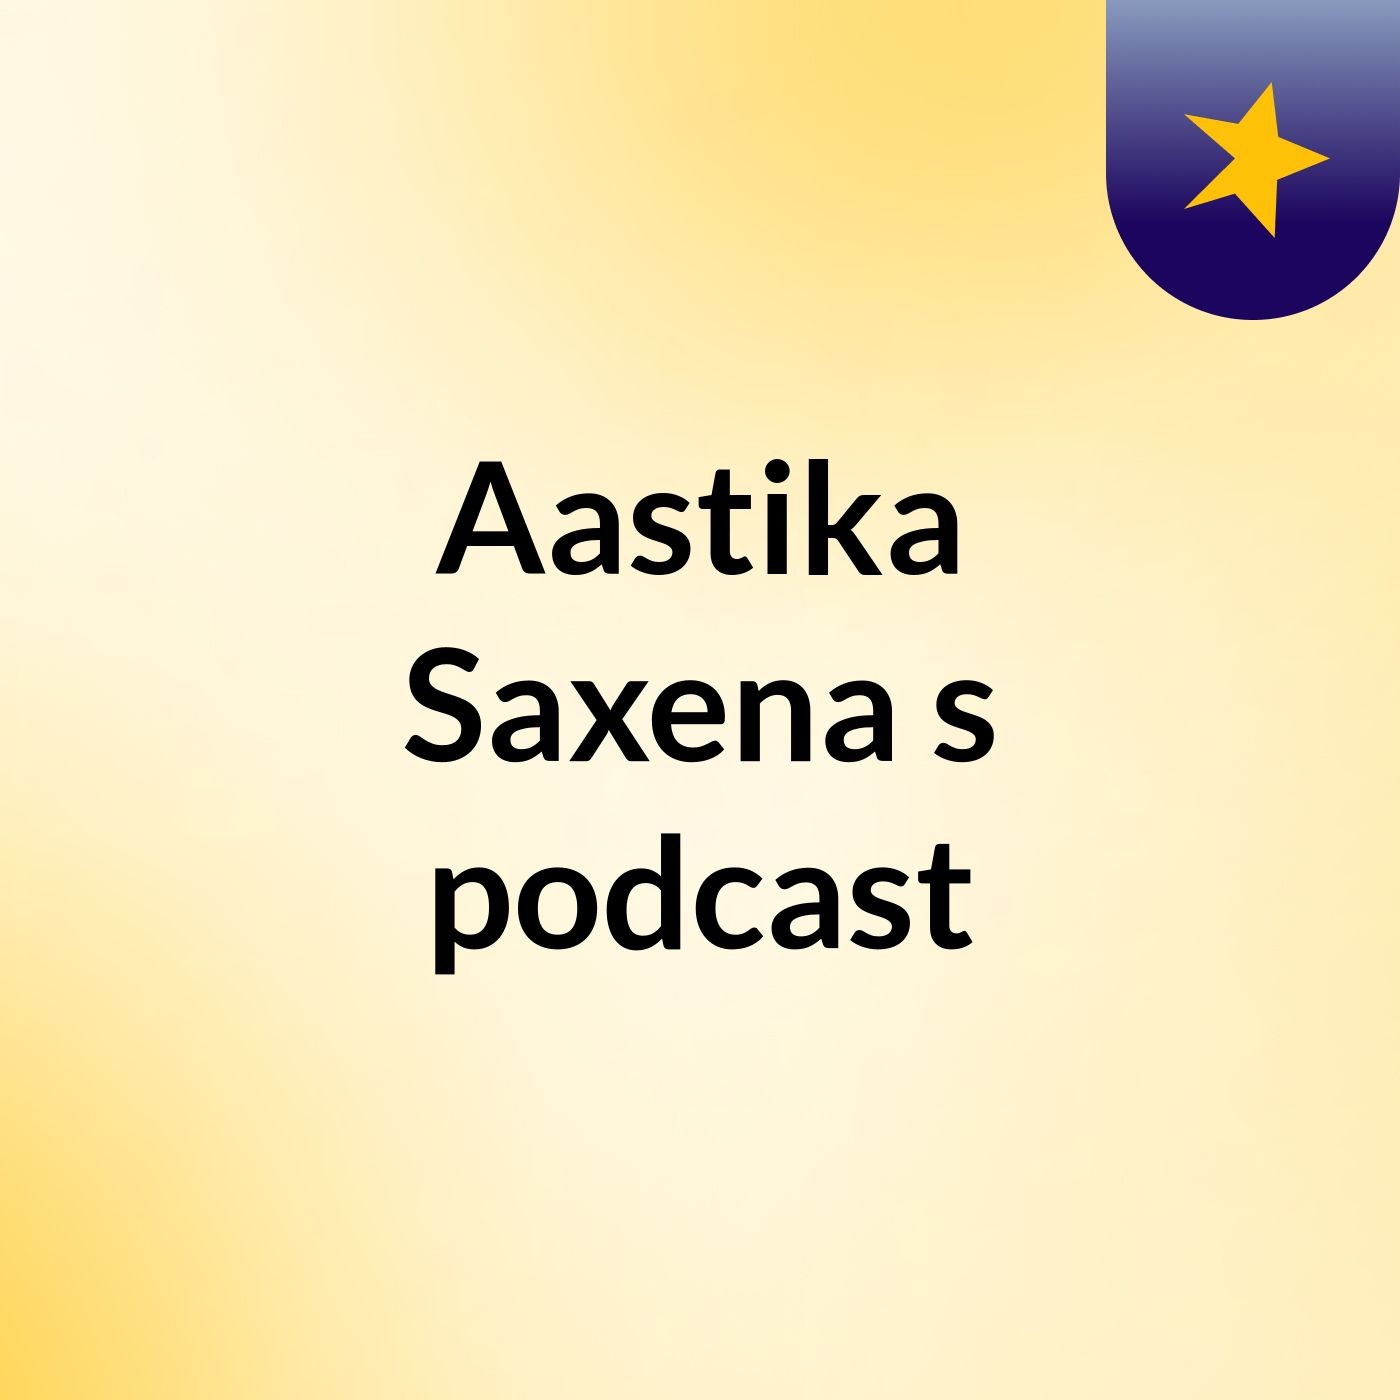 Aastika Saxena's podcast